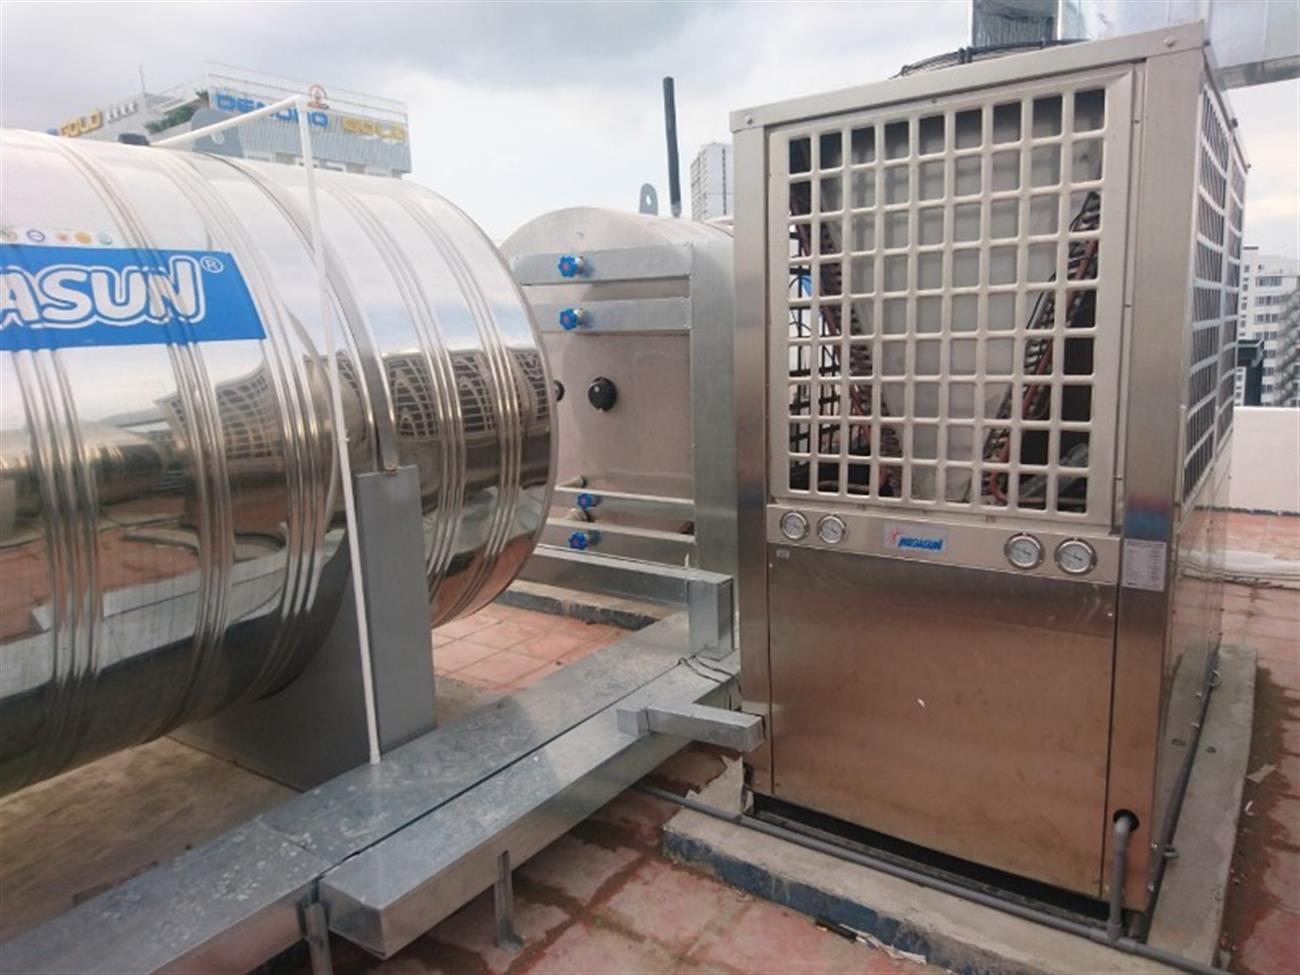 Báo giá lắp đặt hệ thống nước nóng trung tâm Heatpump tại Hà Nội - Ảnh 1